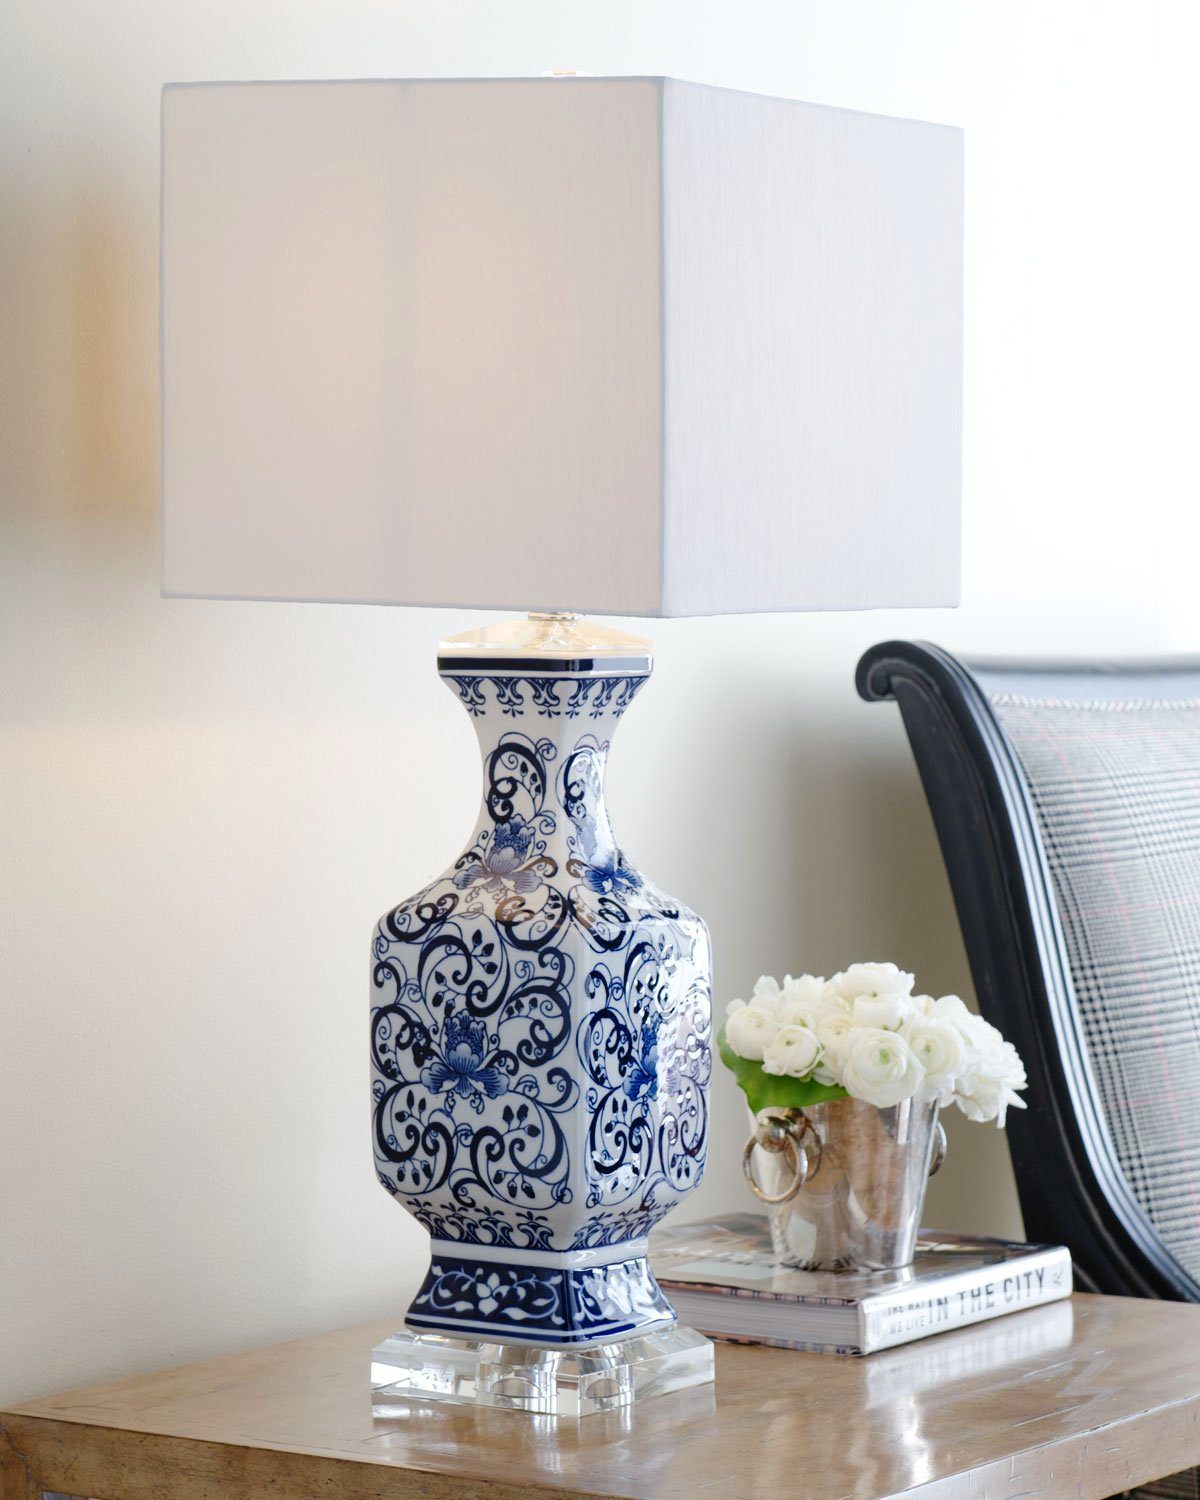 Синяя керамическая настольная лампа с орнаментом в китайском стиле шинуазри "Кентерберри" (в интерьере)